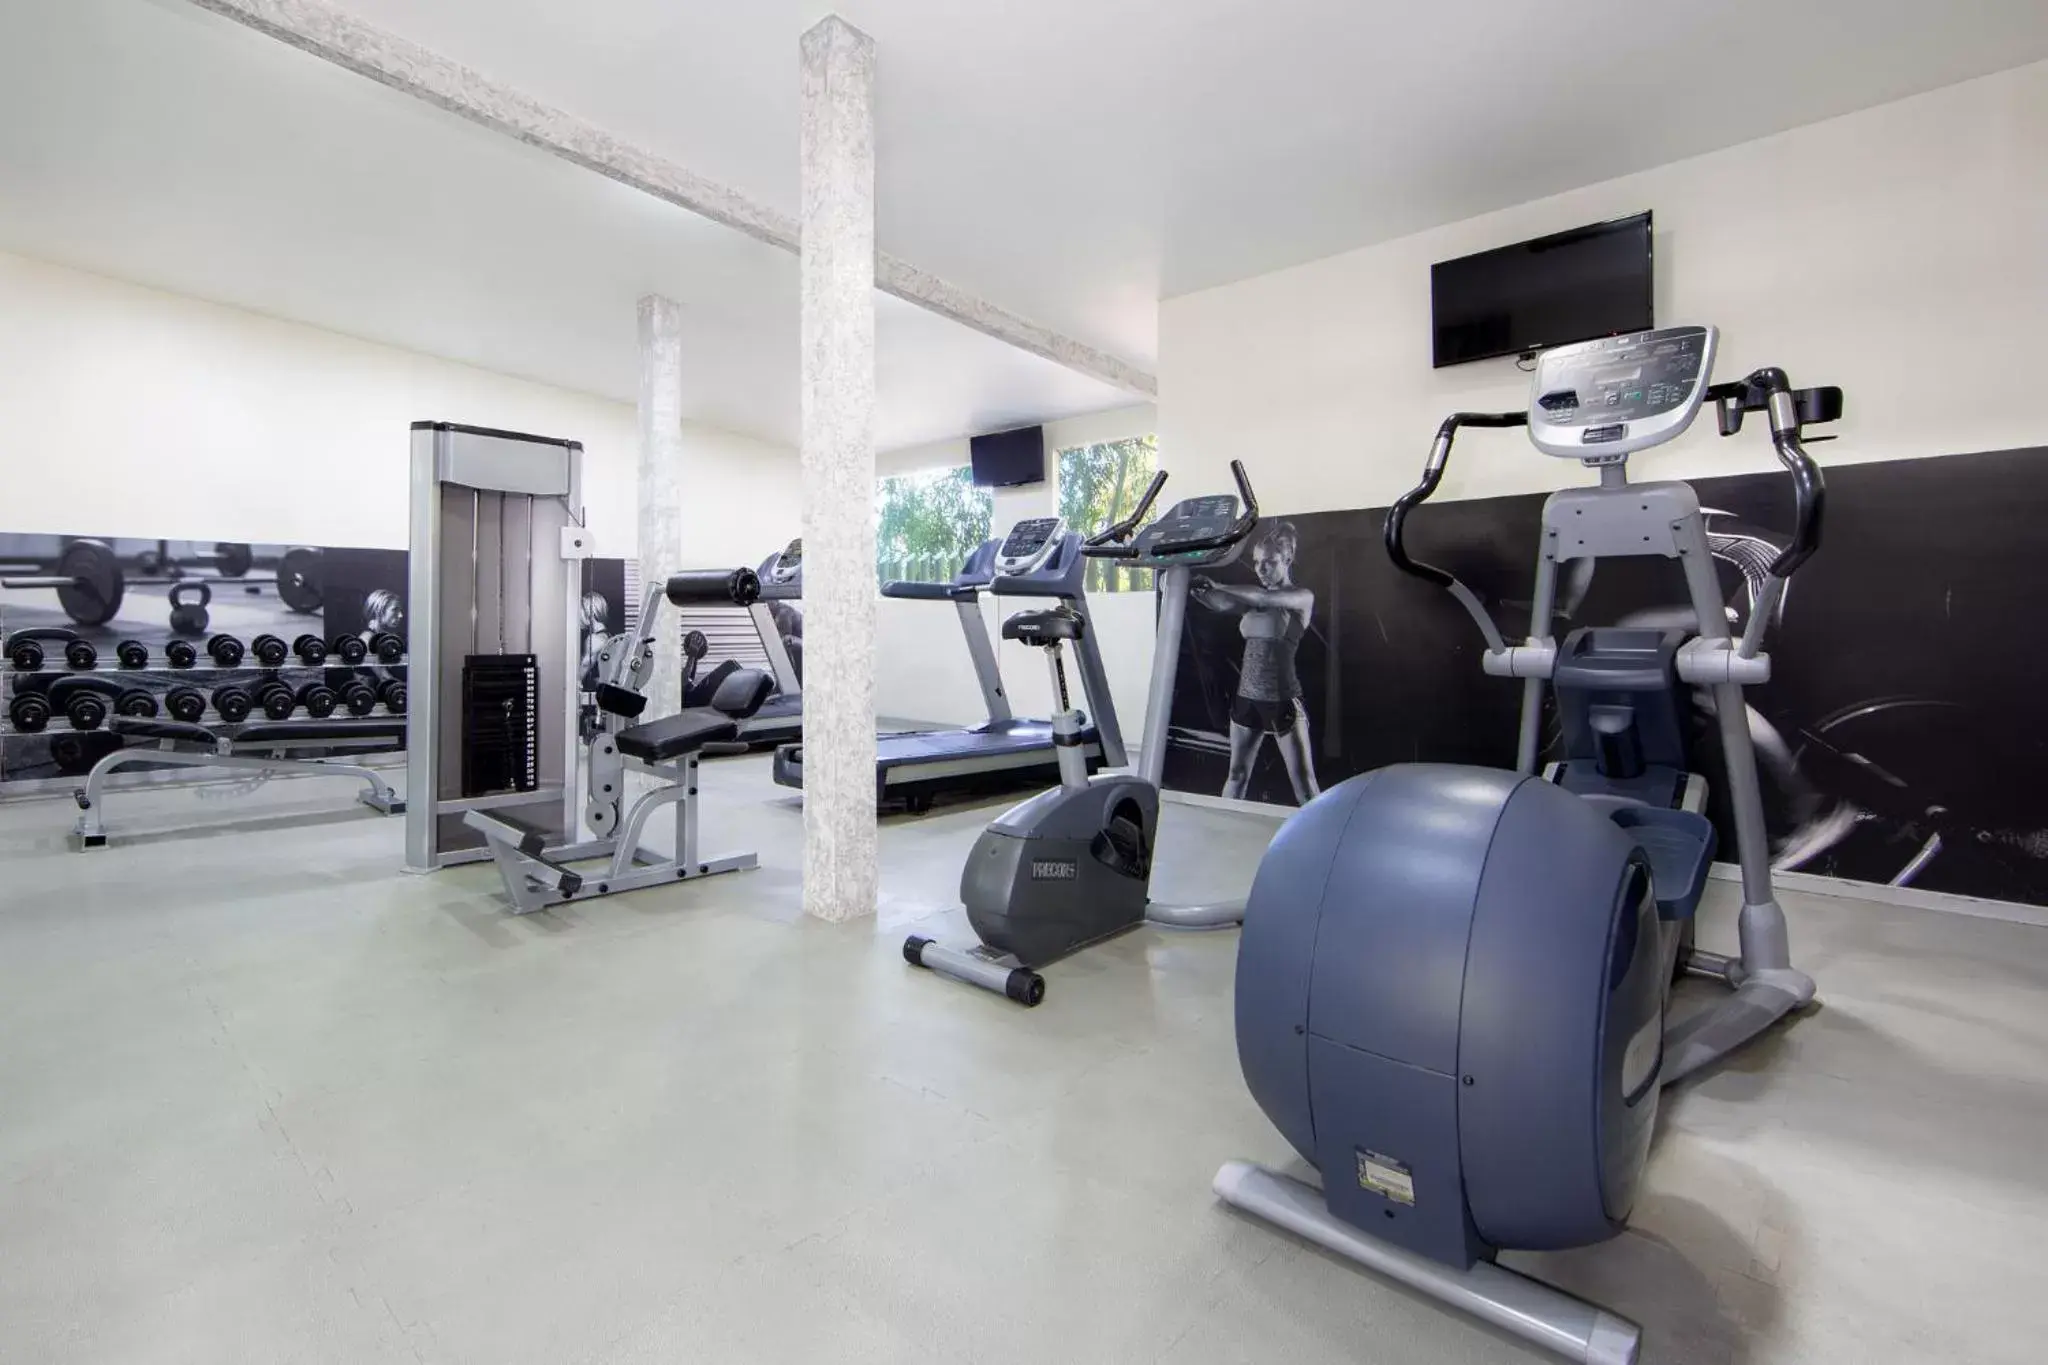 Fitness centre/facilities, Fitness Center/Facilities in Gamma Ciudad de Mexico Santa Fe